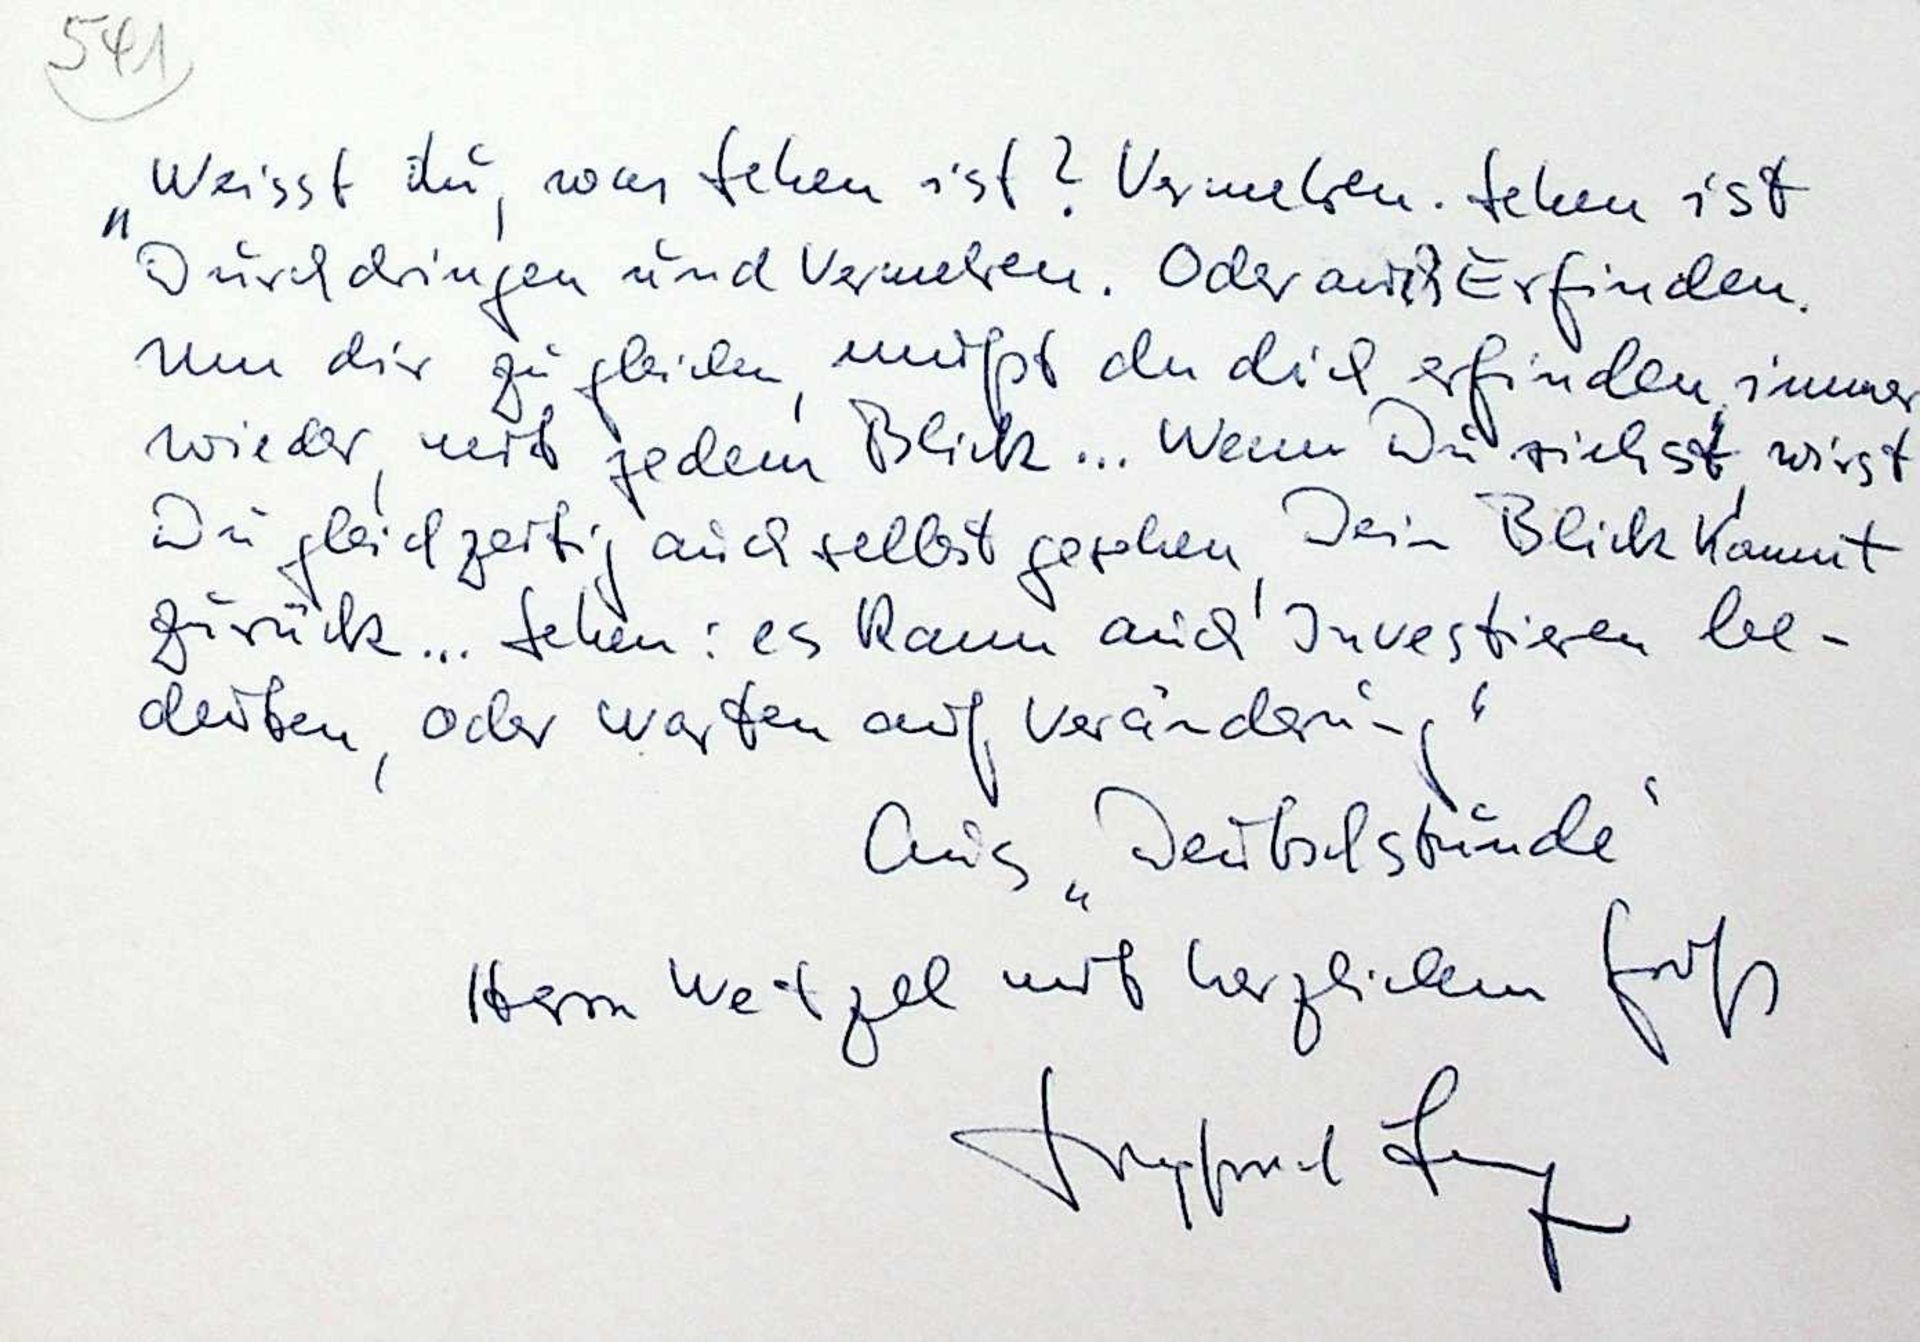 Lenz, Siegfried,E. Albumblatt m. U. O. O. und Dat. Qu.-8ø. 1 S.Zitat aus Deutschstunde, 1968: "